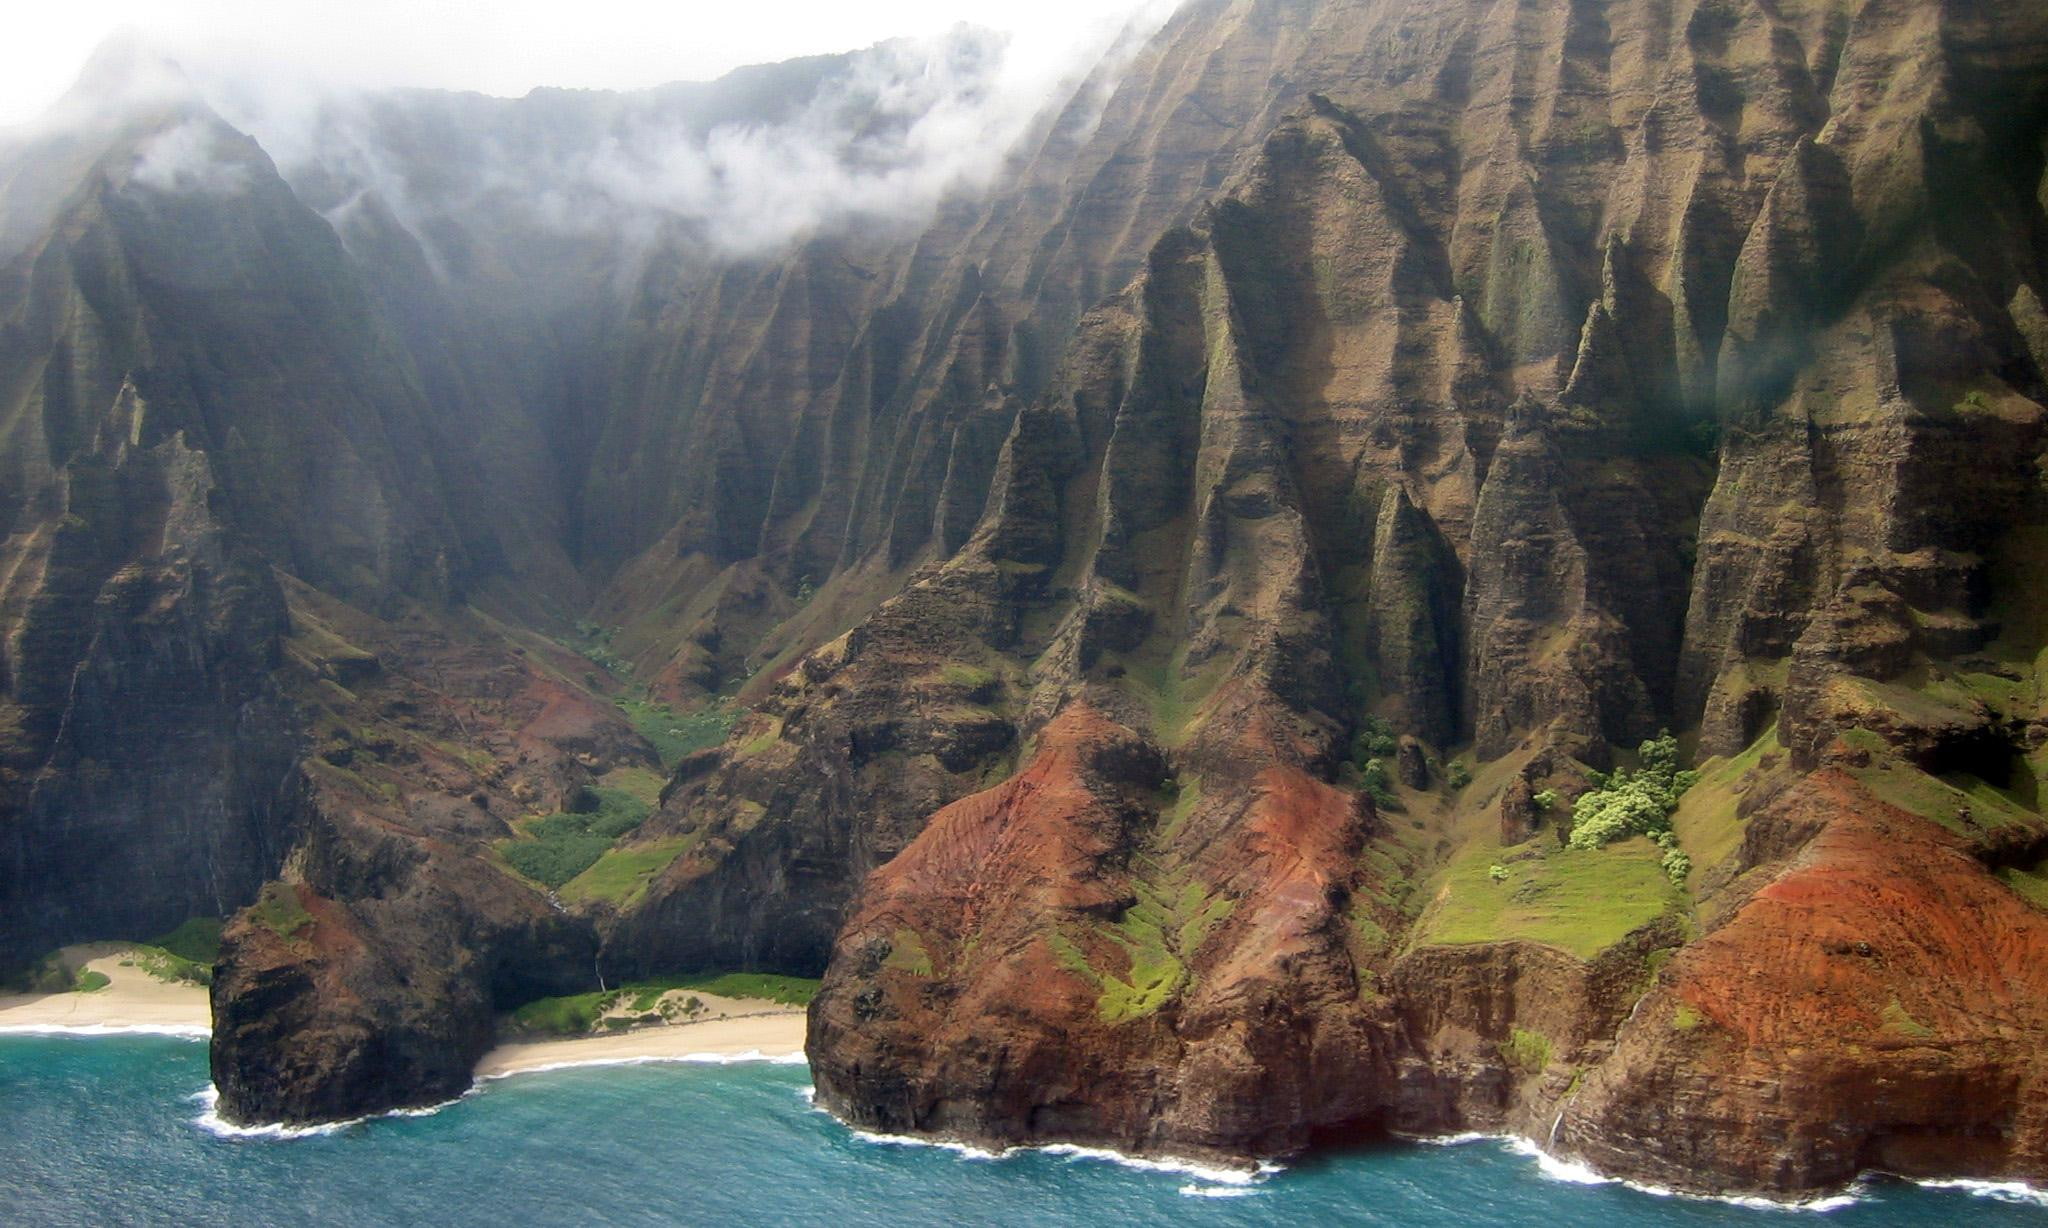 Na Pali, hawaii, park, national, nature, coast, 3d and abstract